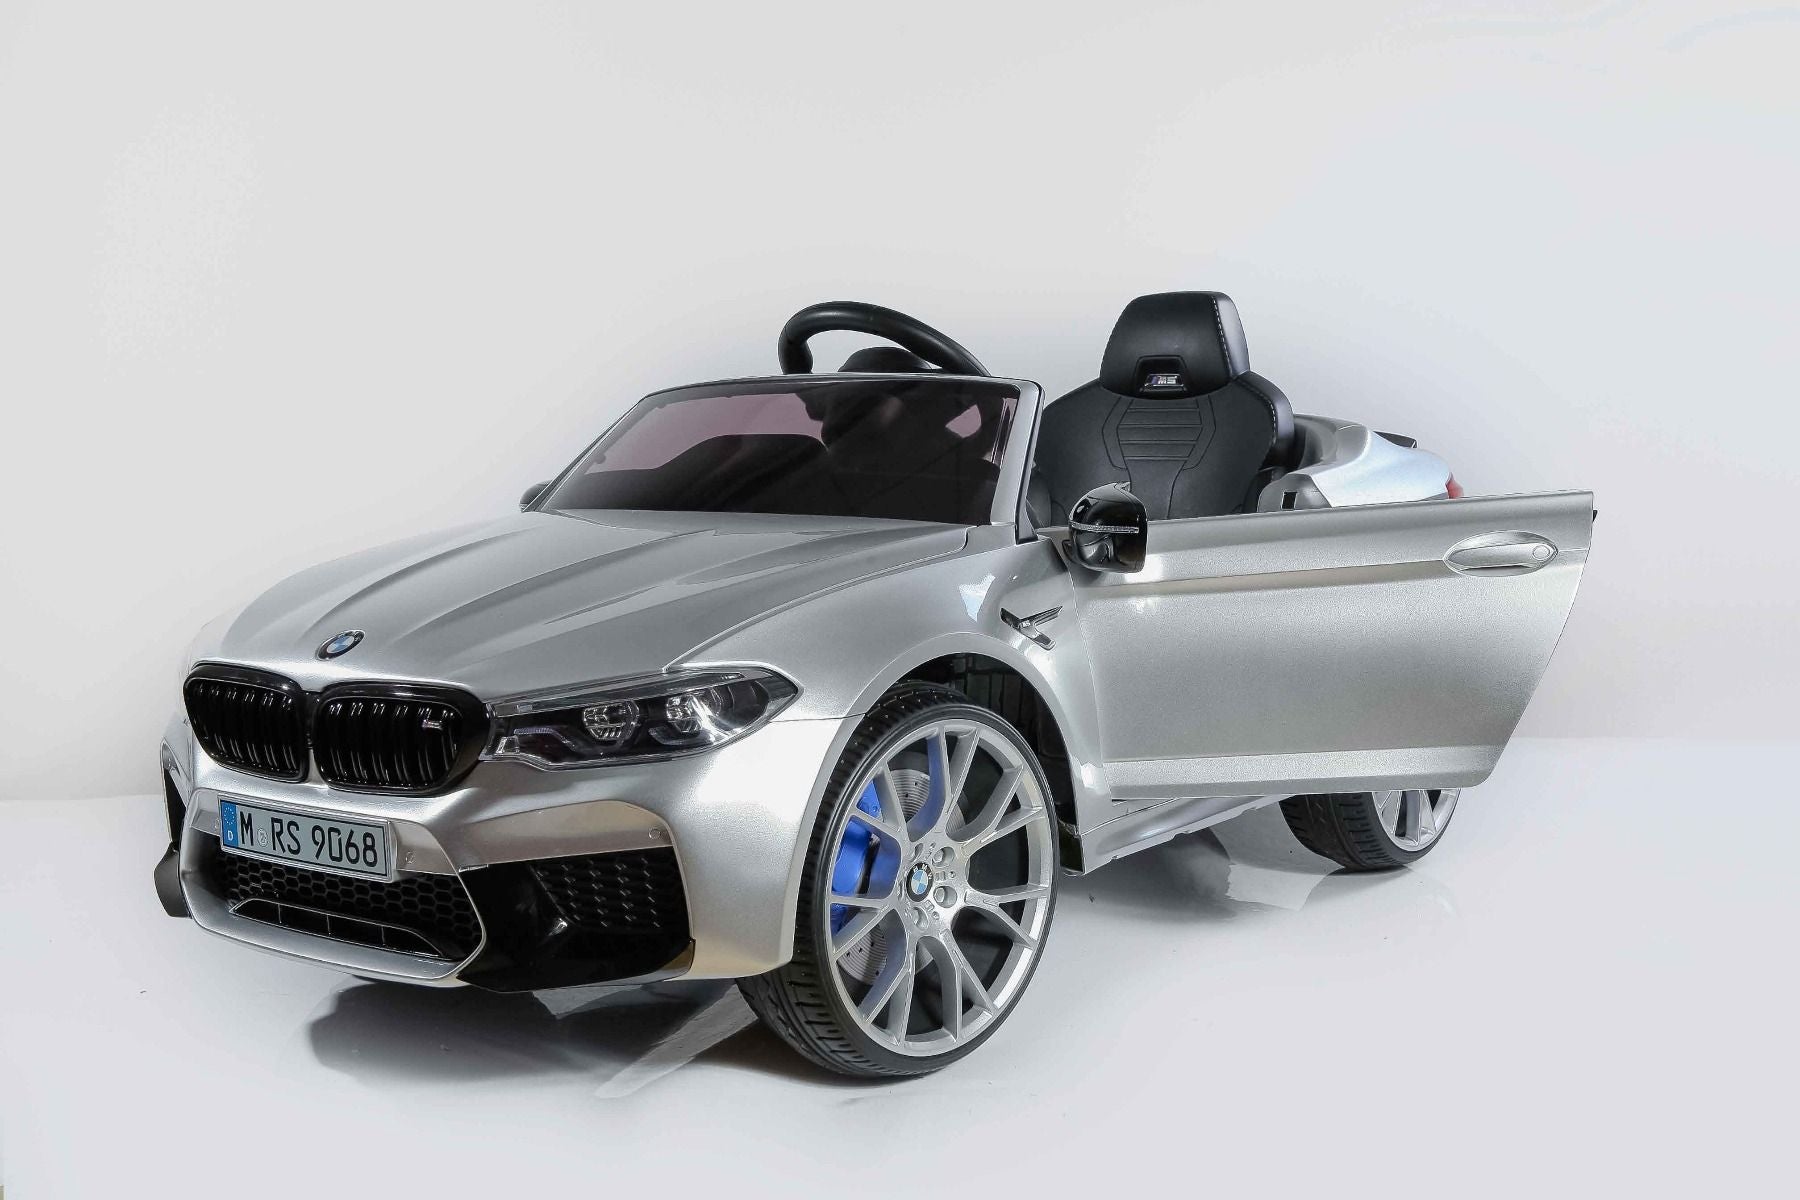 BMW M5 24 Volts blanc, voiture électrique enfant 24 Volts 1 place, 2 moteurs